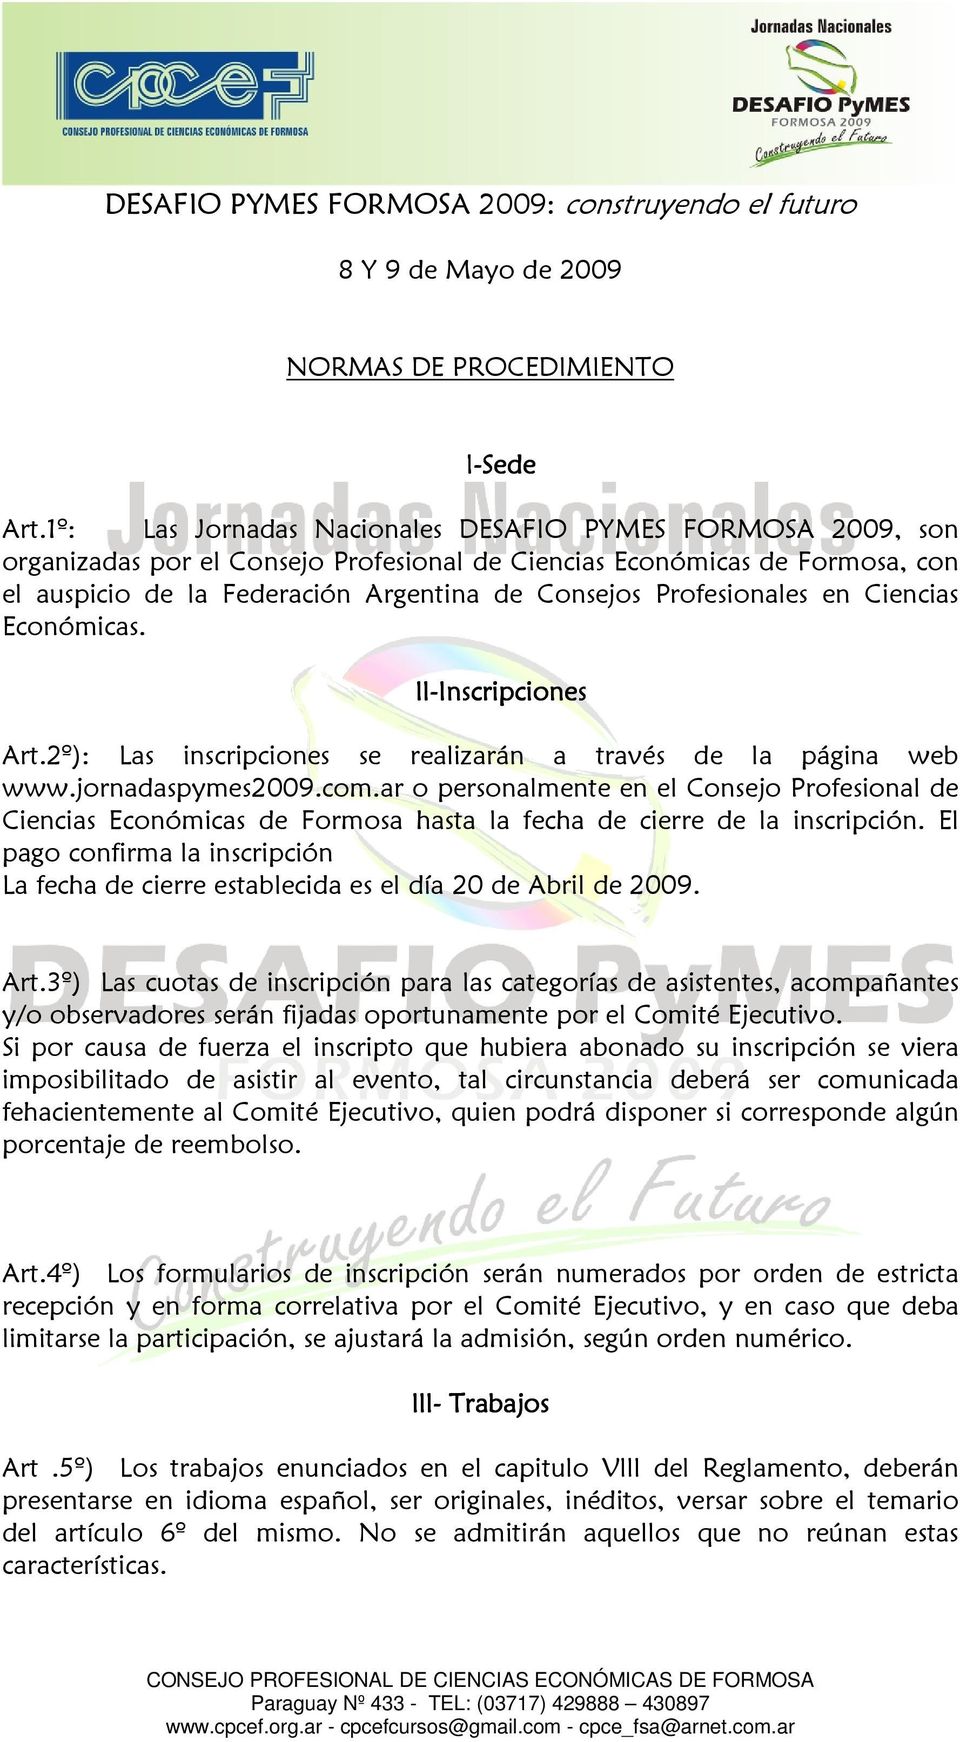 Profesionales en Ciencias Económicas. Il-Inscripciones Inscripciones Art.2º): Las inscripciones se realizarán a través de la página web www.jornadaspymes2009.com.